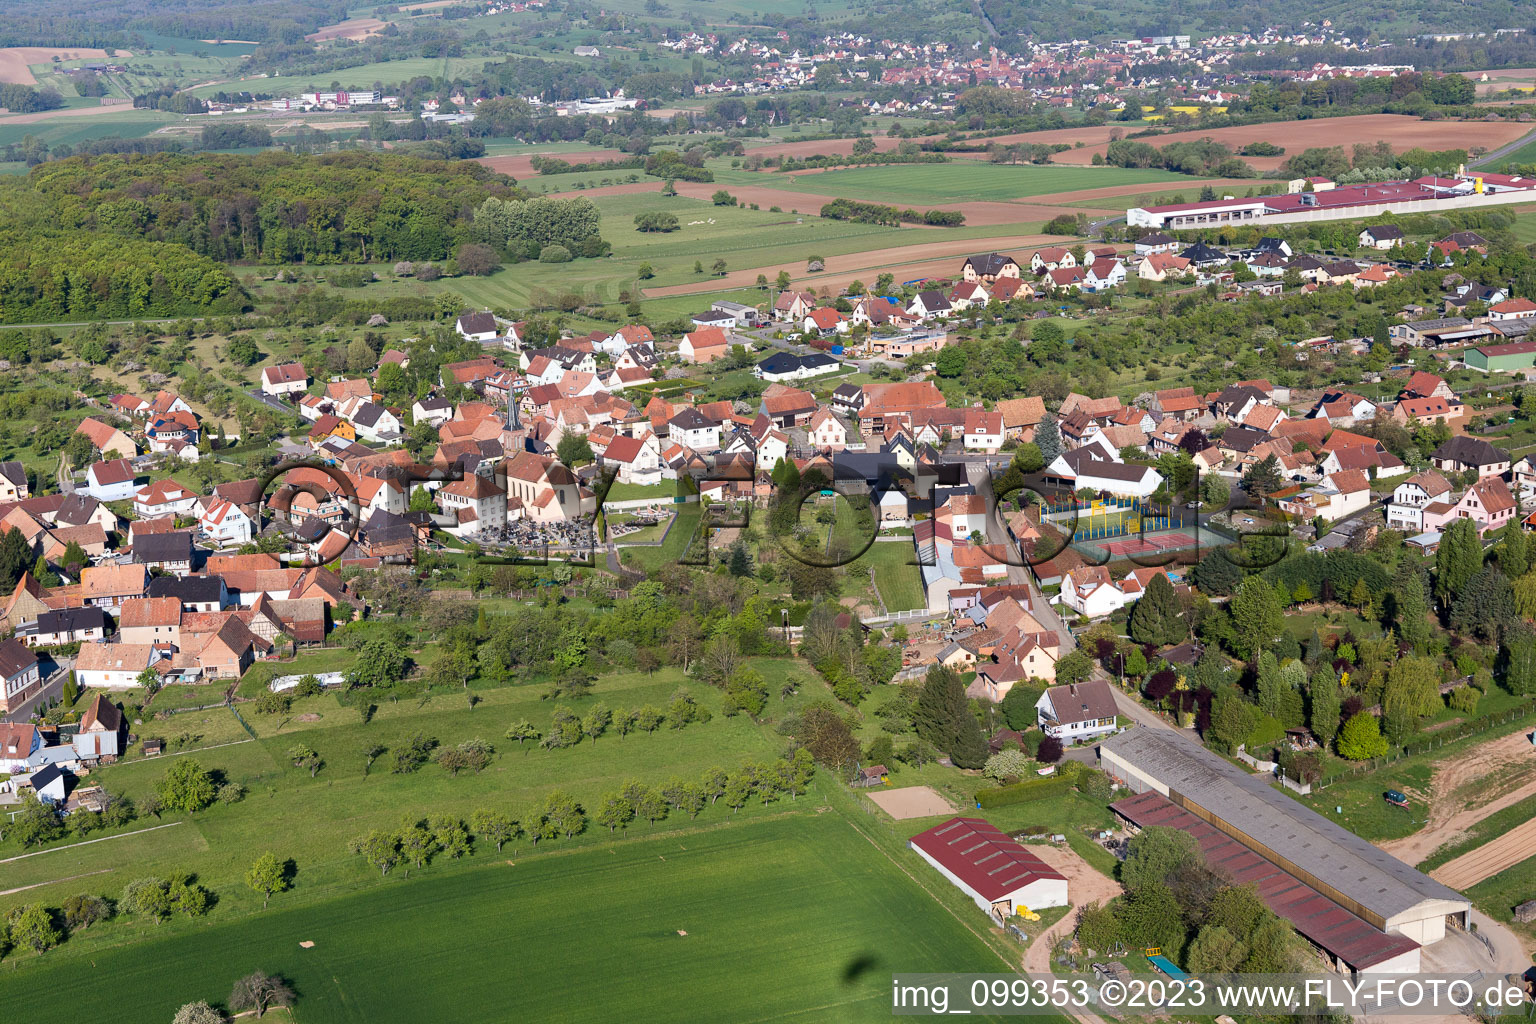 Vue aérienne de Dieffenbach-lès-Wœrth dans le département Bas Rhin, France